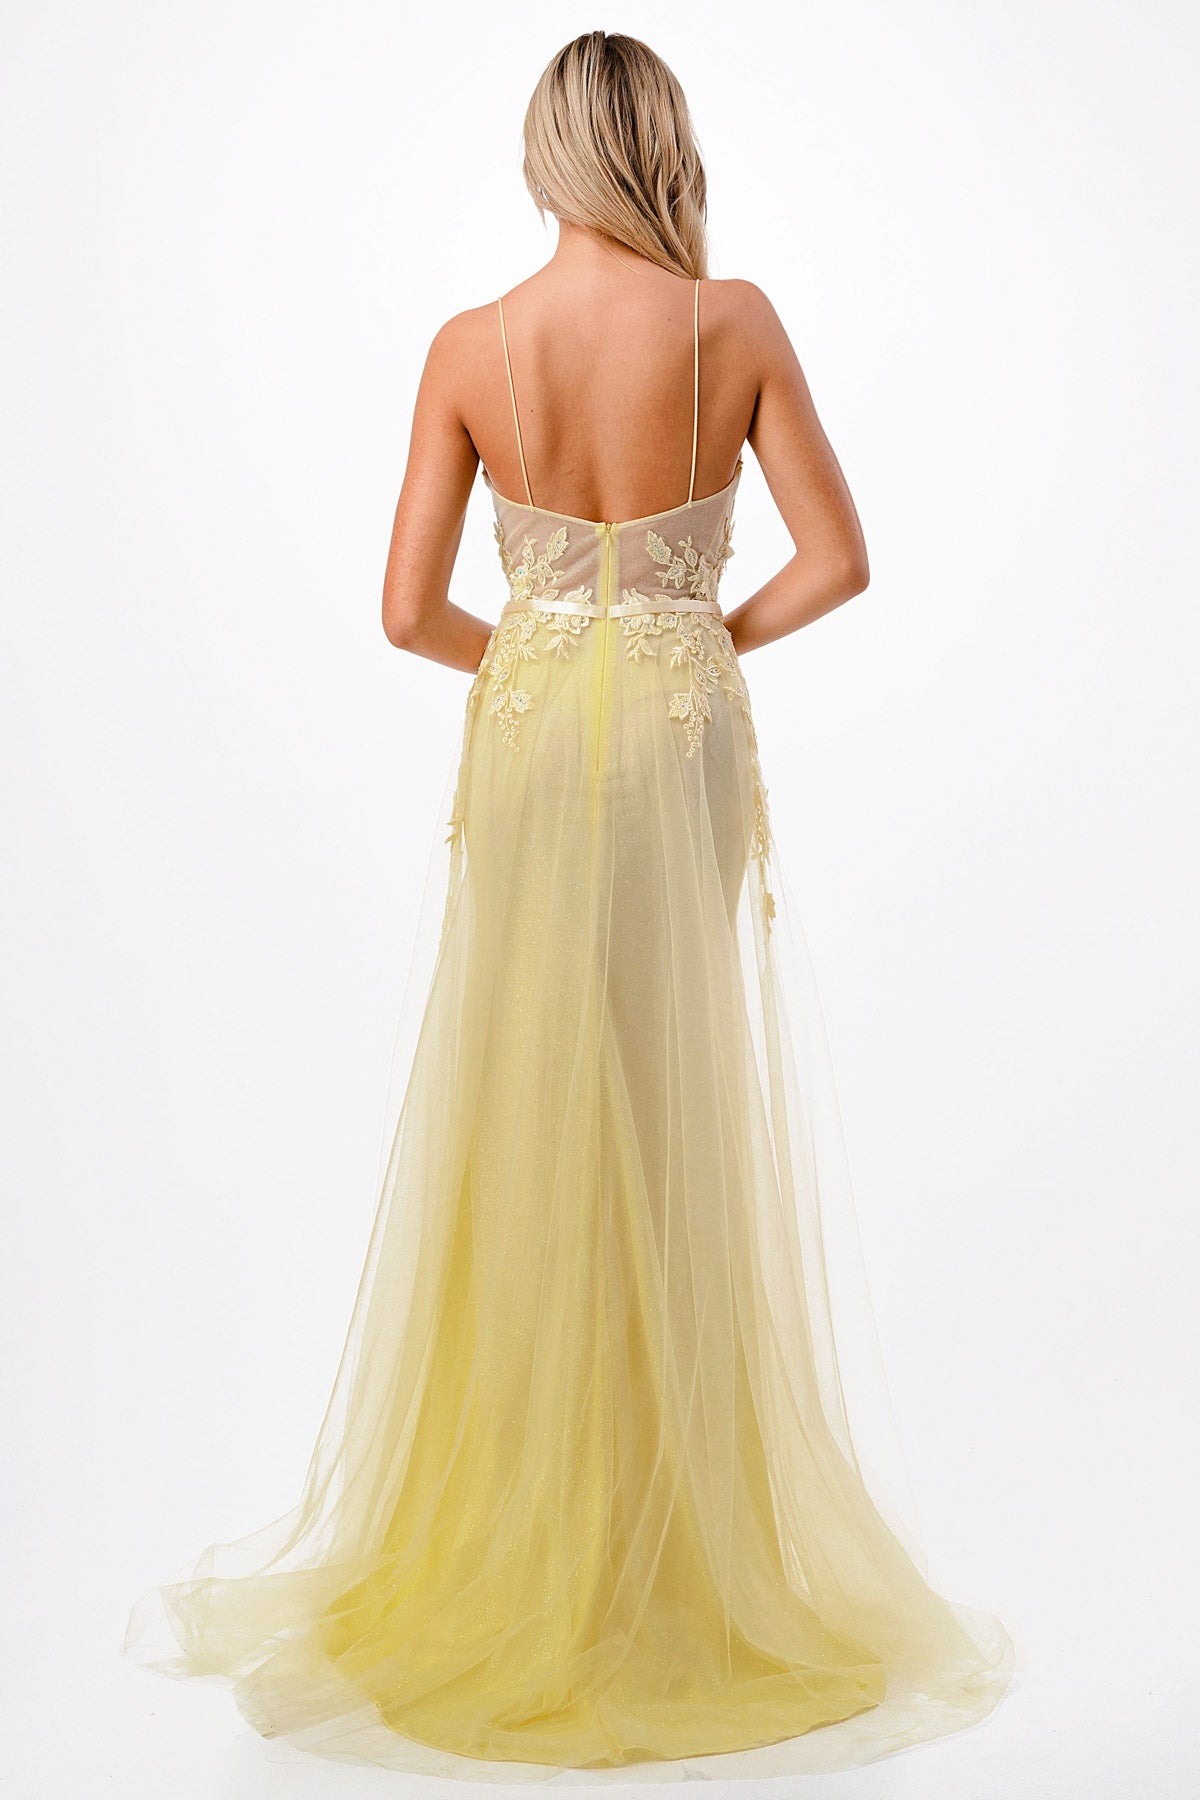 Aspeed Design -P2110 Floral Applique A Line Dress